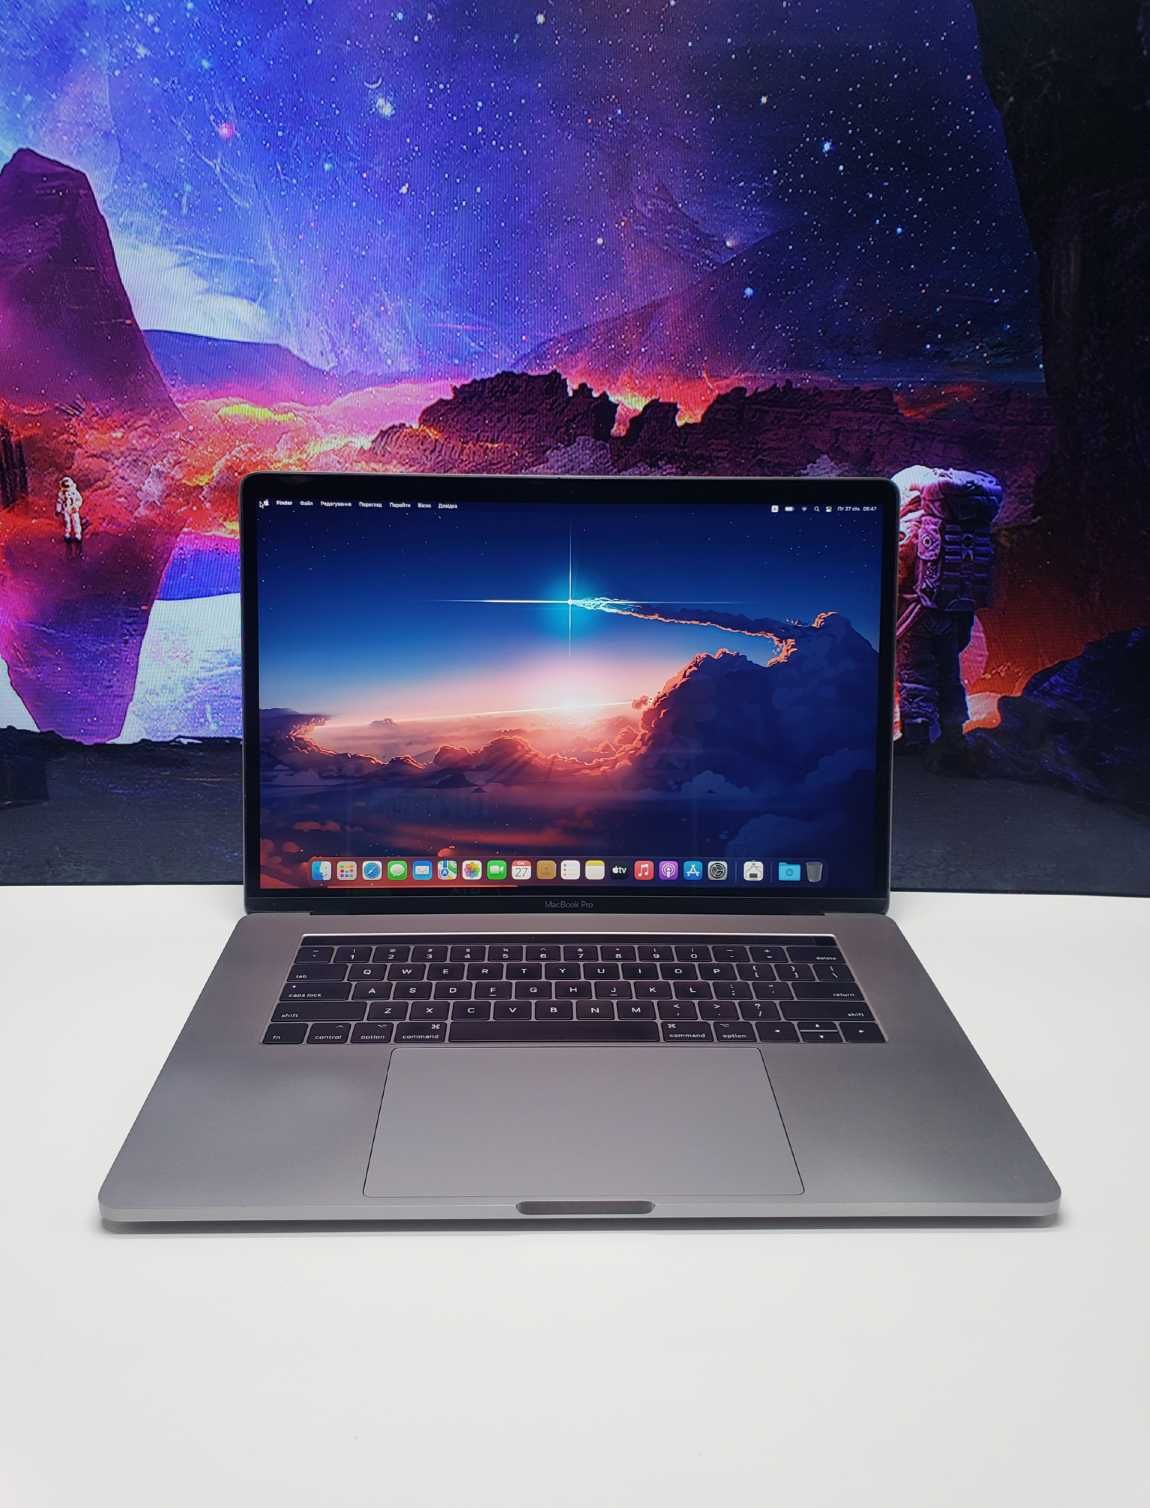 Уценка! Ноутбук MacBook Pro 15’’ MLH32 2016 i7/16/256/Pro450, 2GB